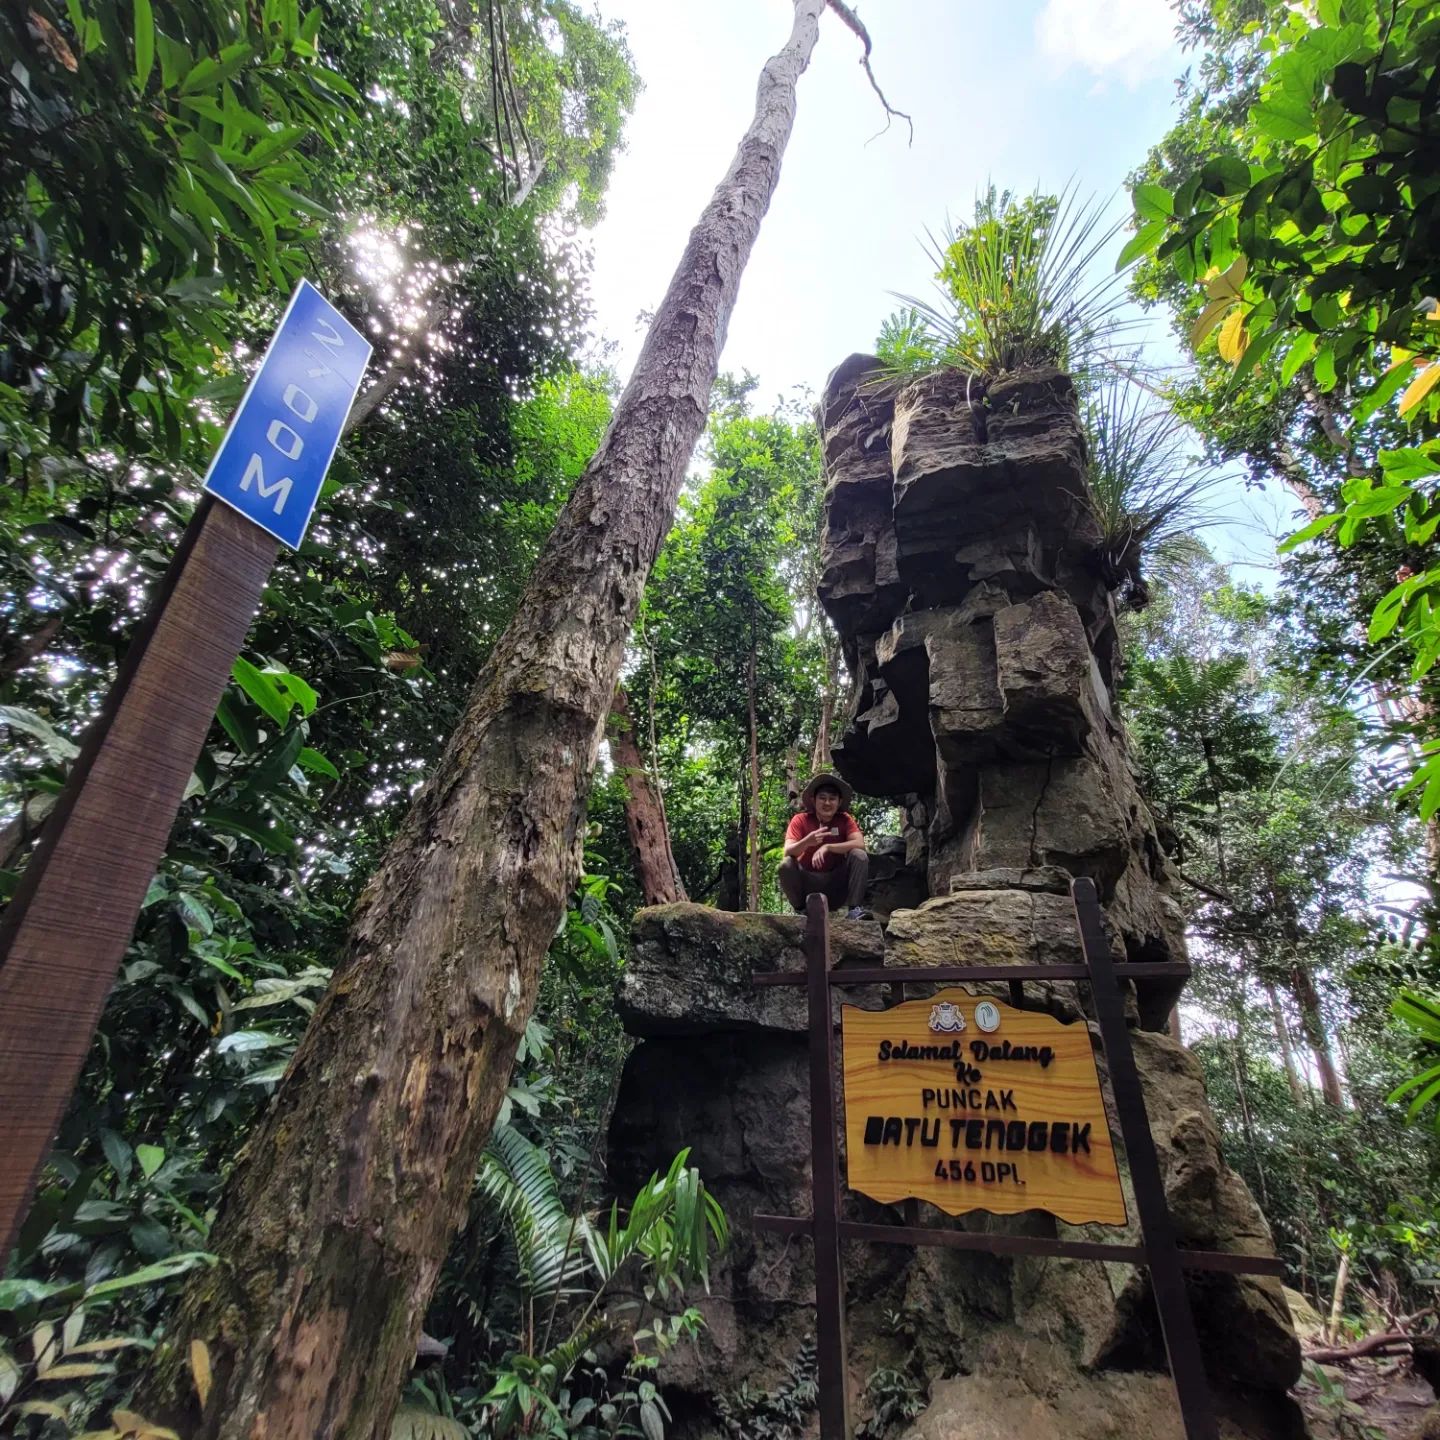 hiking in malaysia - Gunung Panti - rocks